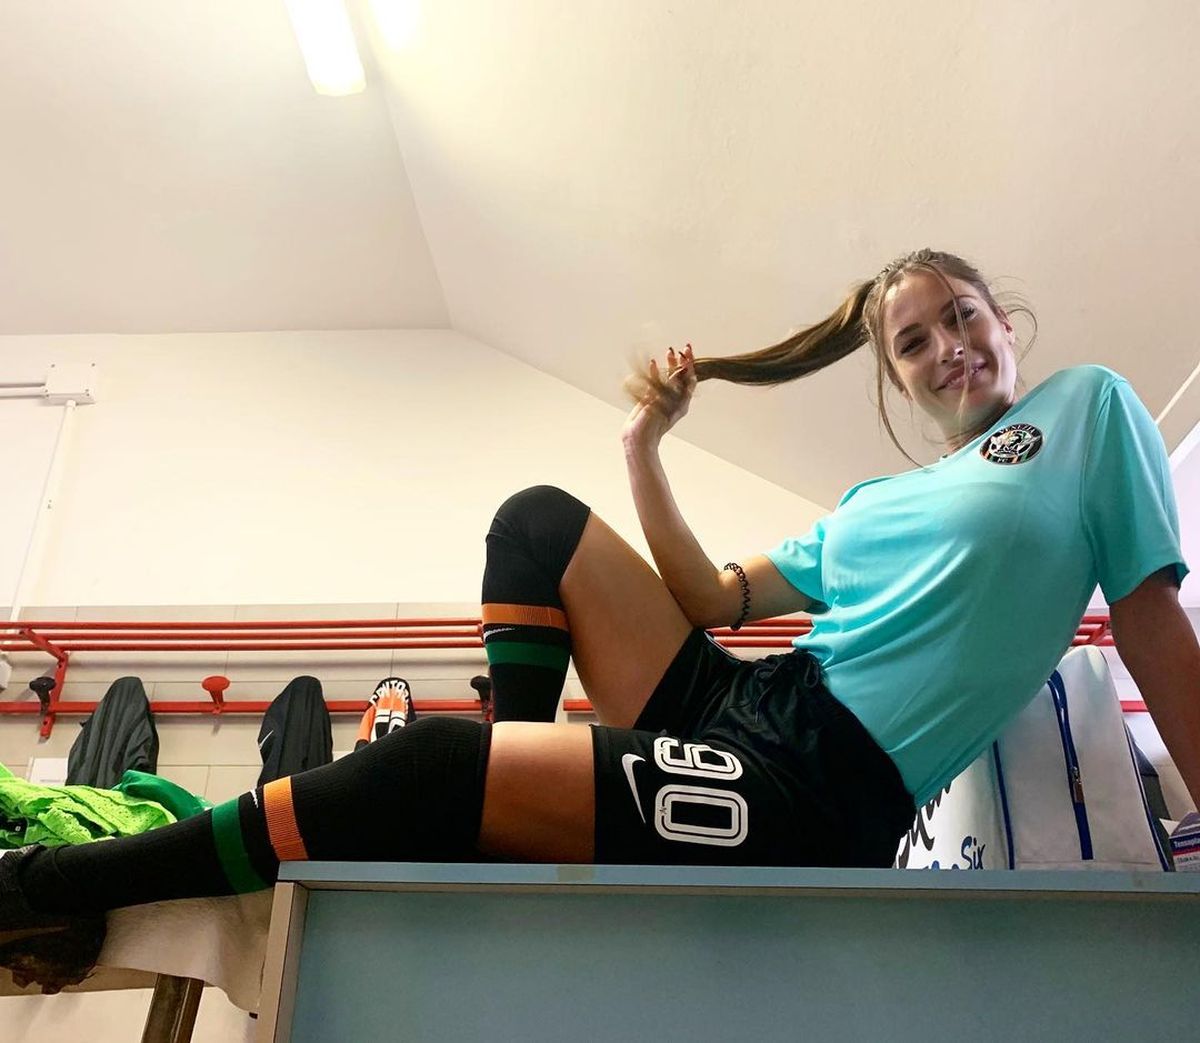 Pin oleh Oussama Catalonia di fb  Pemain bola wanita, Sepatu sepakbola,  Bola sepak